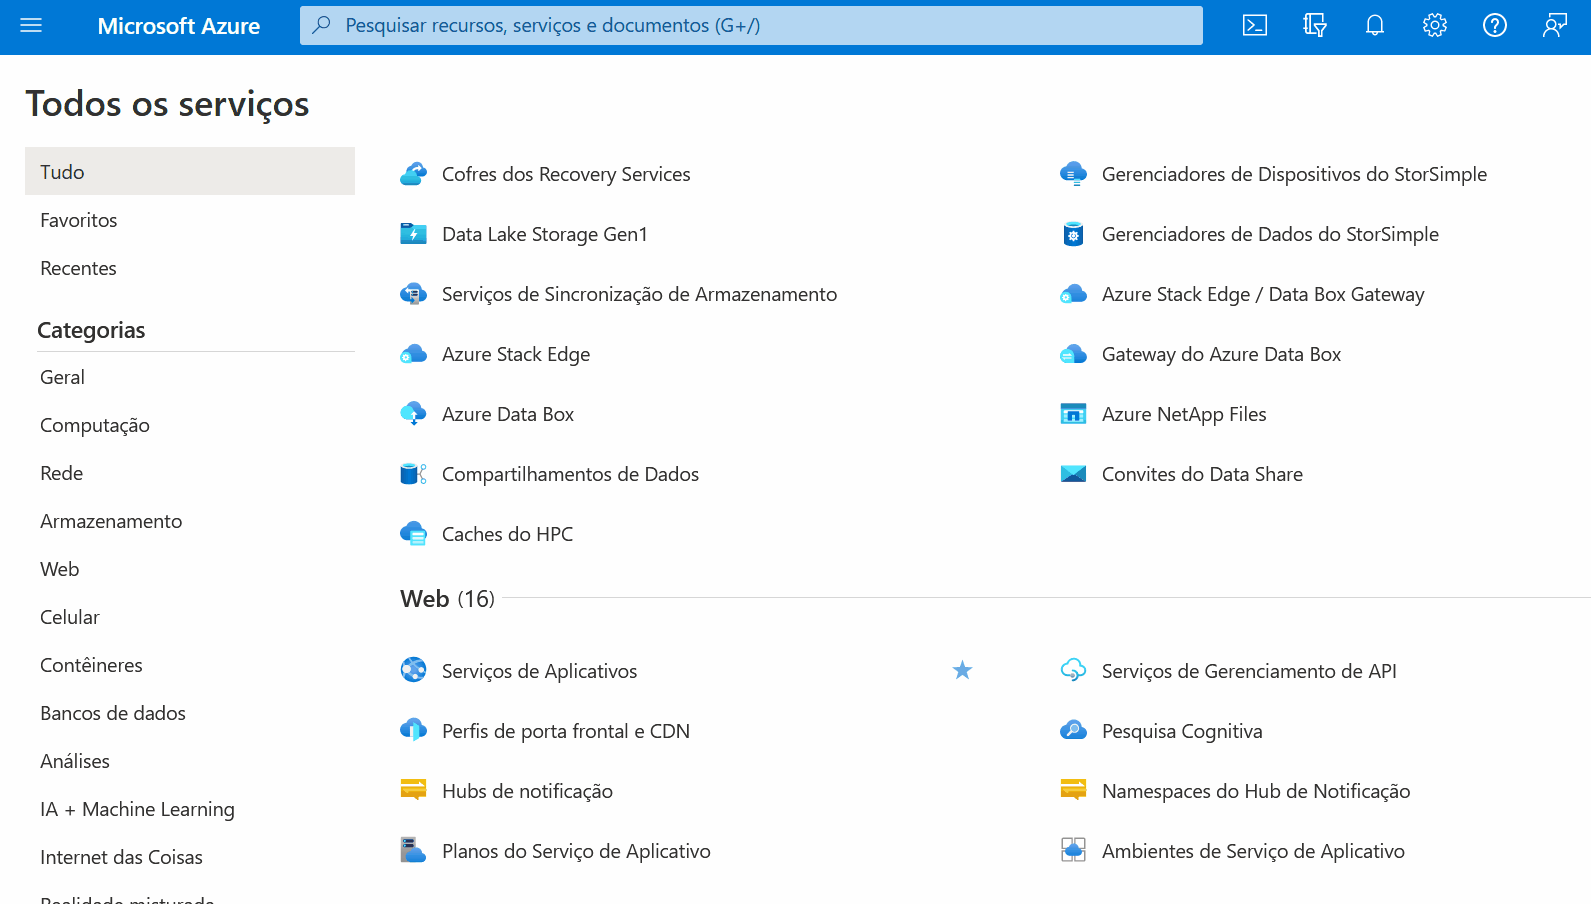 Gif animado que mostra tela da Microsof Azure com a diversidade de serviços tais como Máquinas virtuais do Azure e SQL server. A tela está em movimento como se estivessemos “rolando” a página para baixo, com uma diversidade de ícones e seus respectivos serviços.